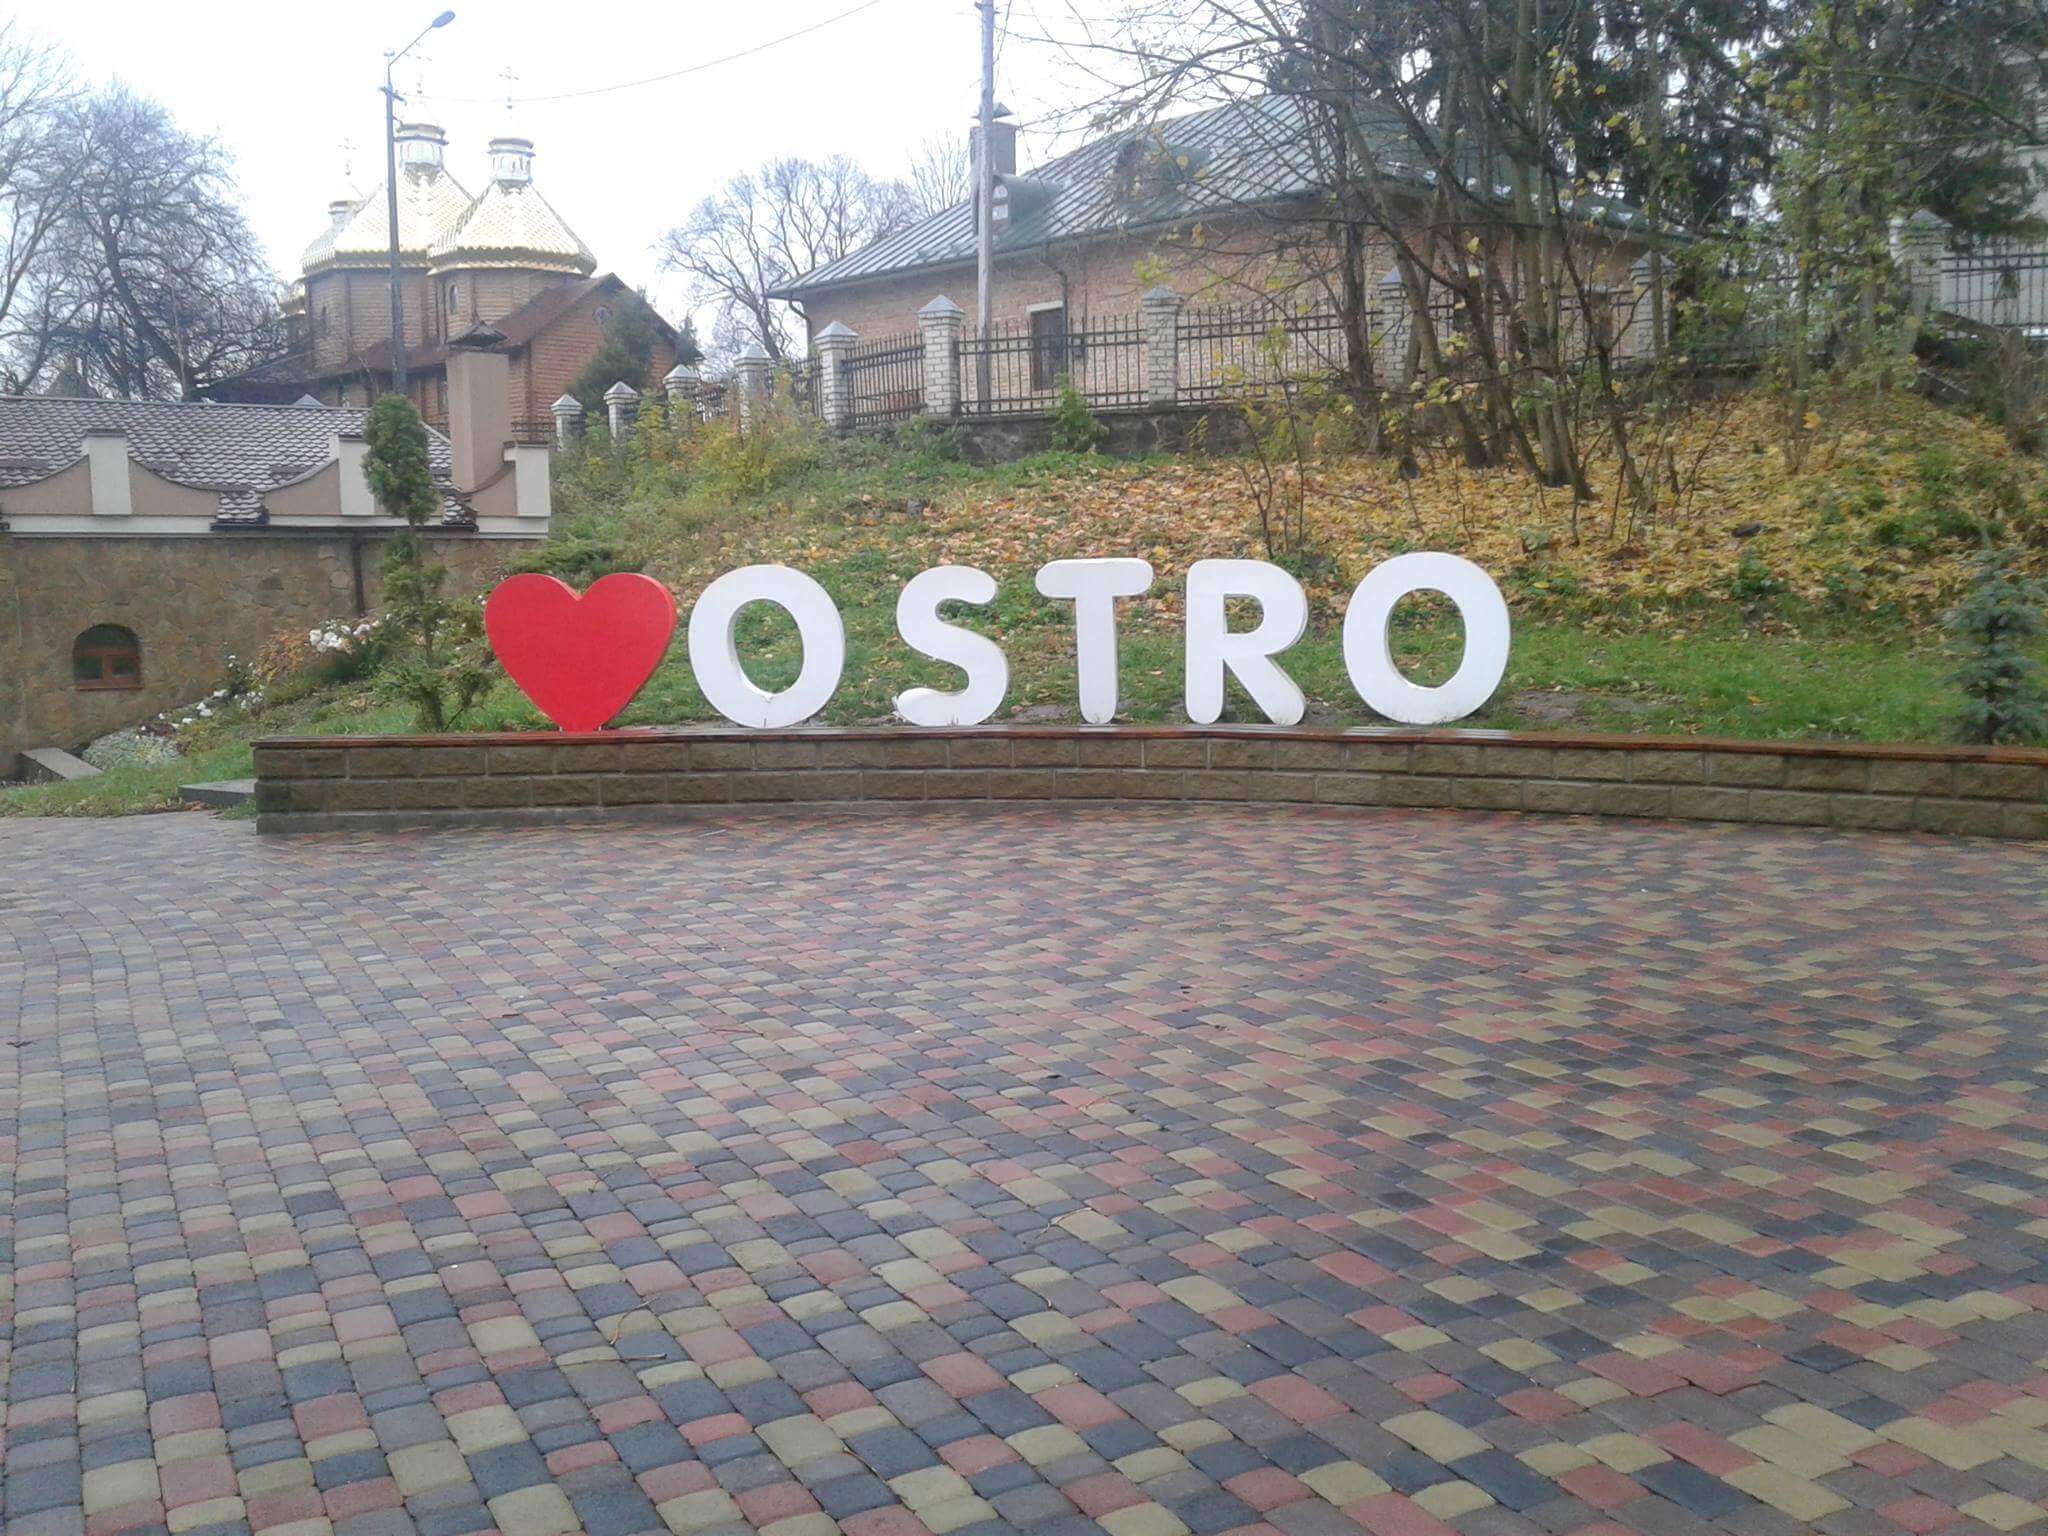 Я люблю OSTROH чи OSTRO: куди поділася літера?